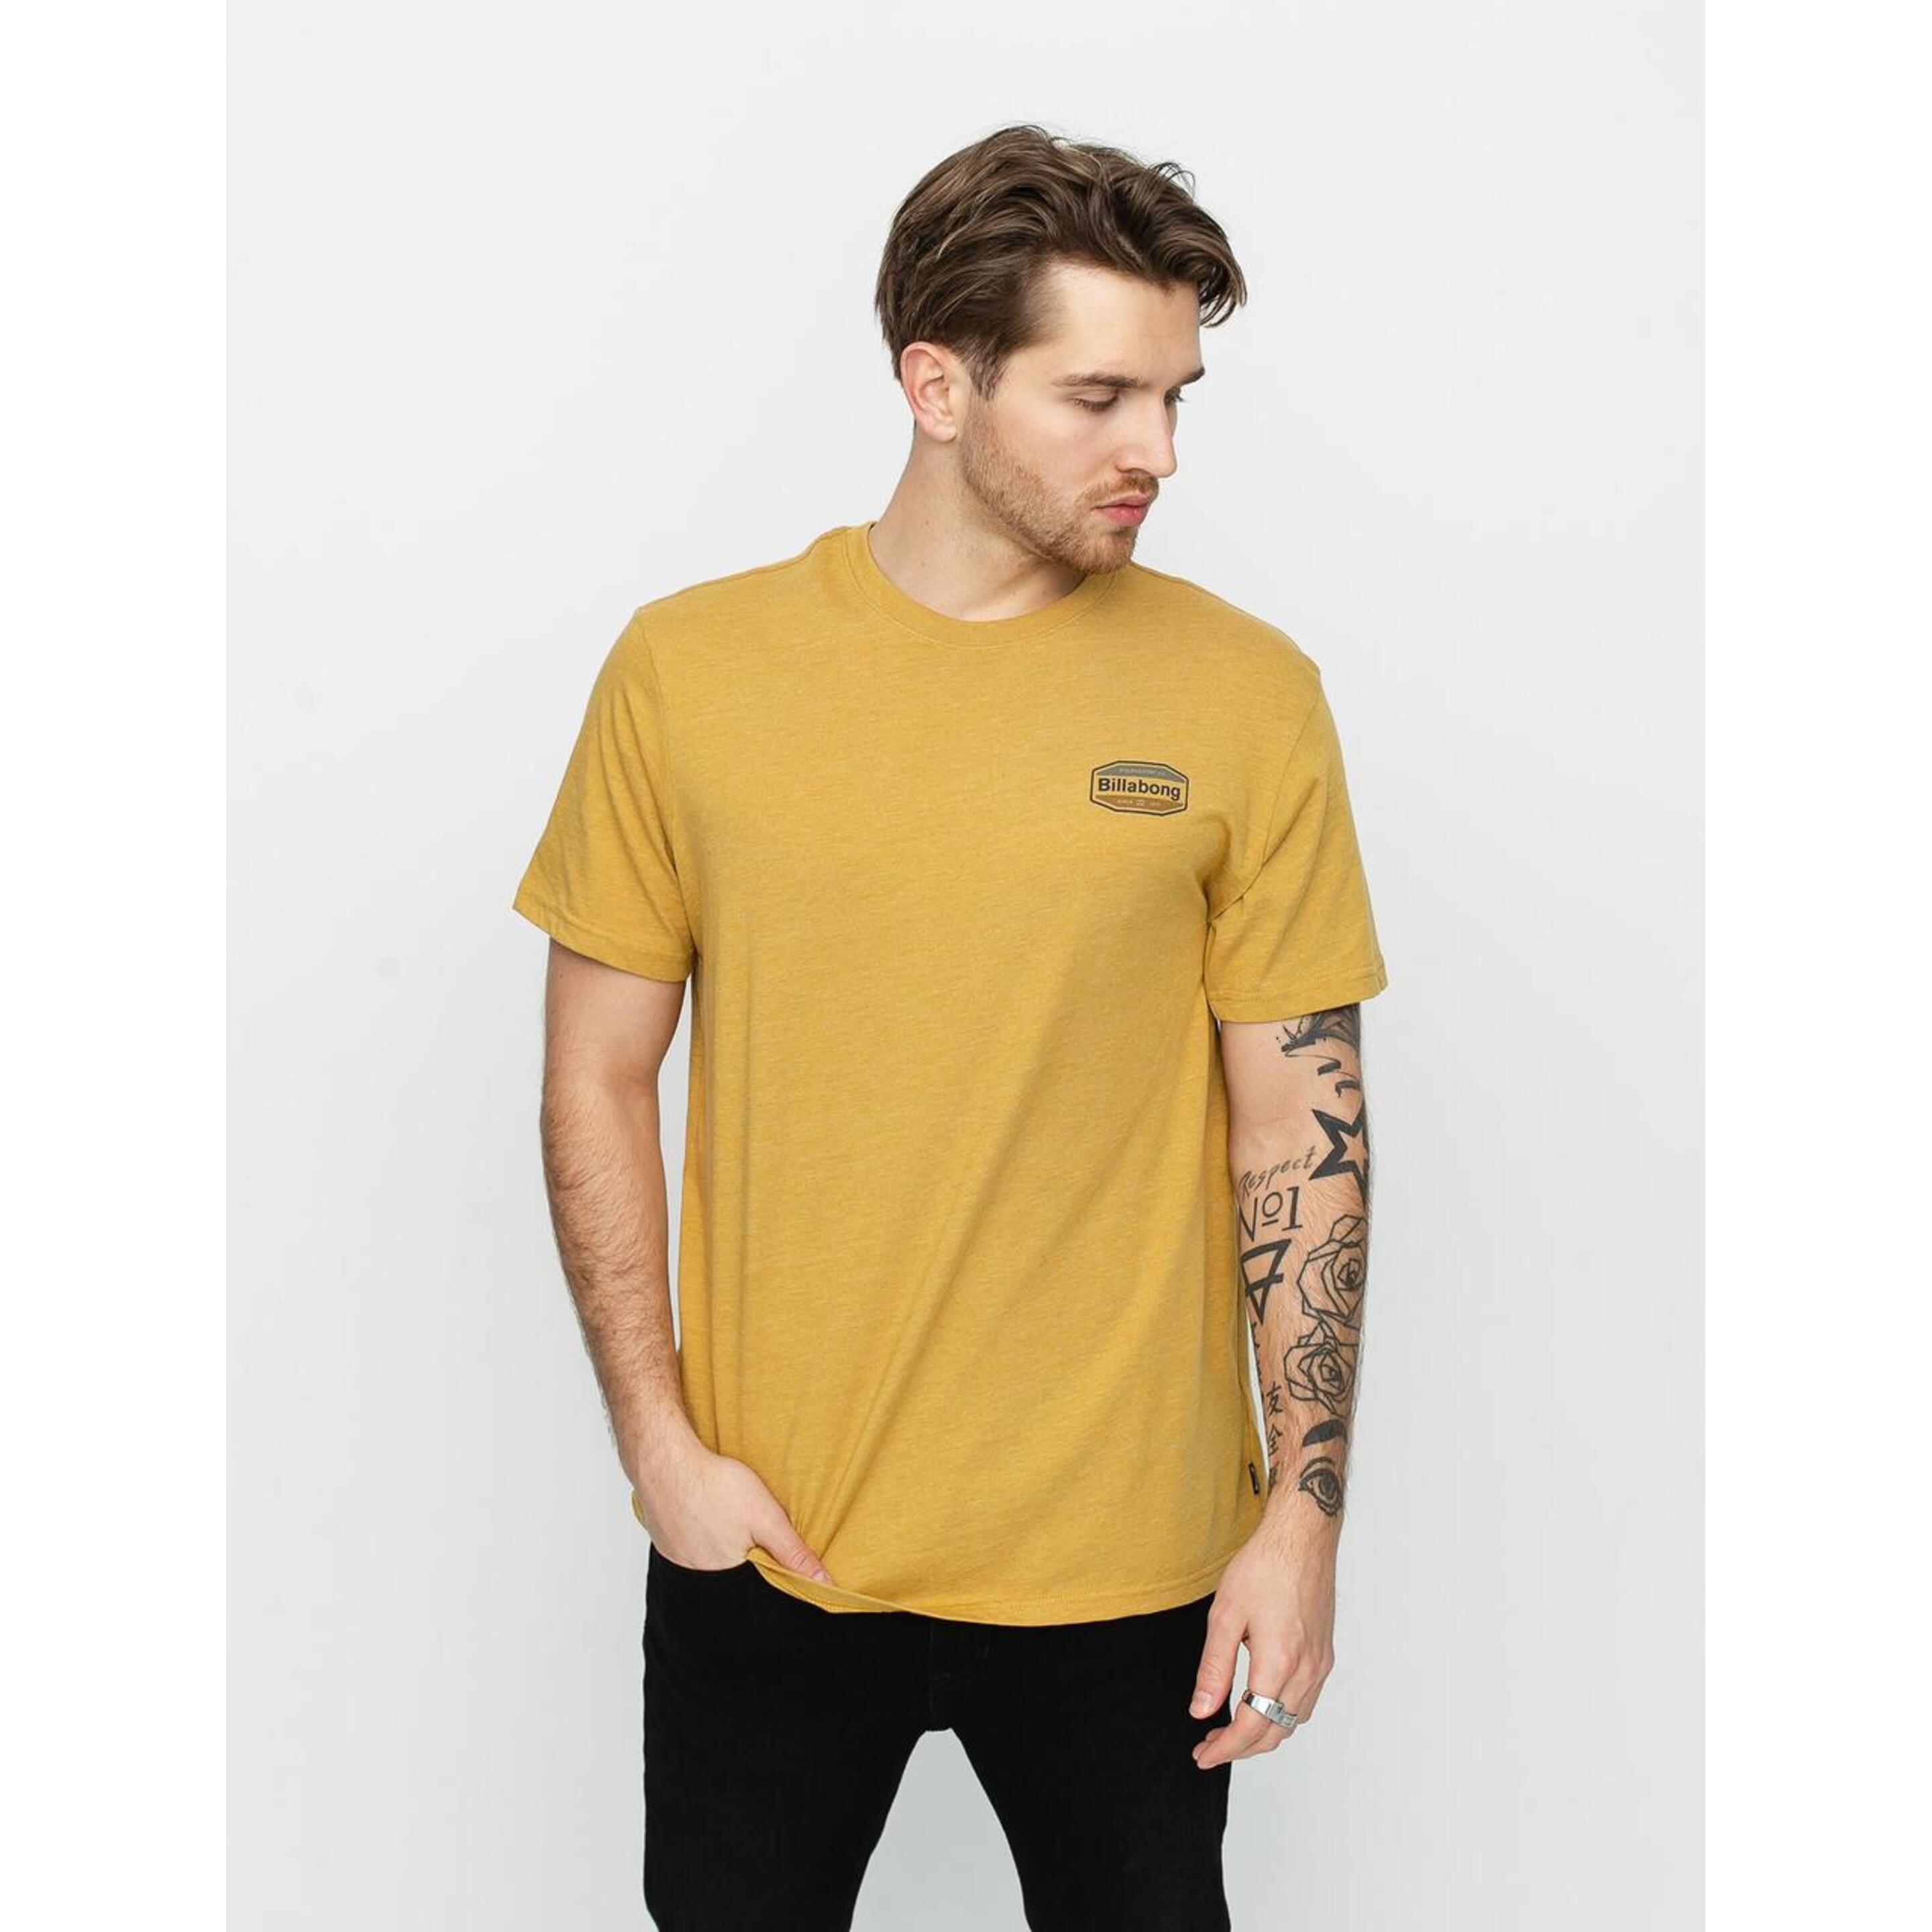 Camiseta Billabong Gold Coast Tee